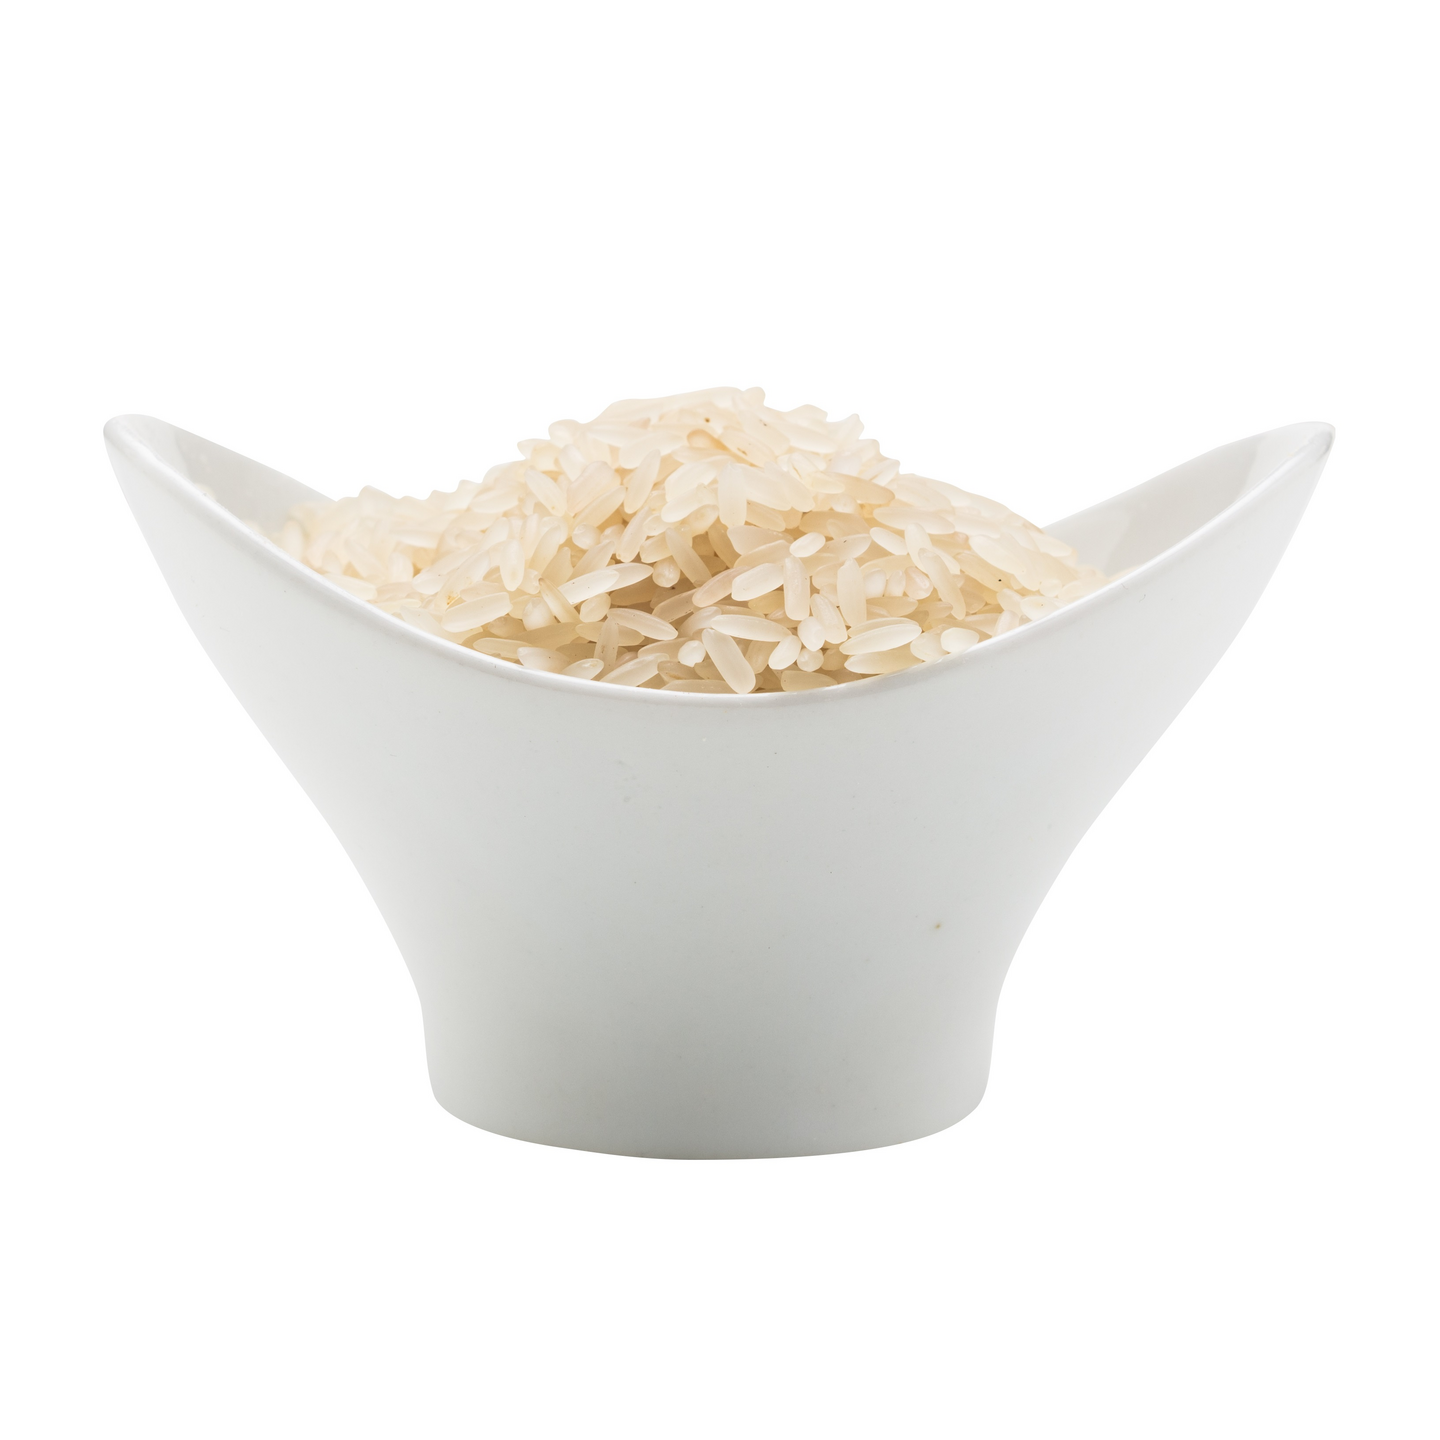 Kung Markatta esikeitetty valkoinen riisi 5kg luomu Reilun kaupan